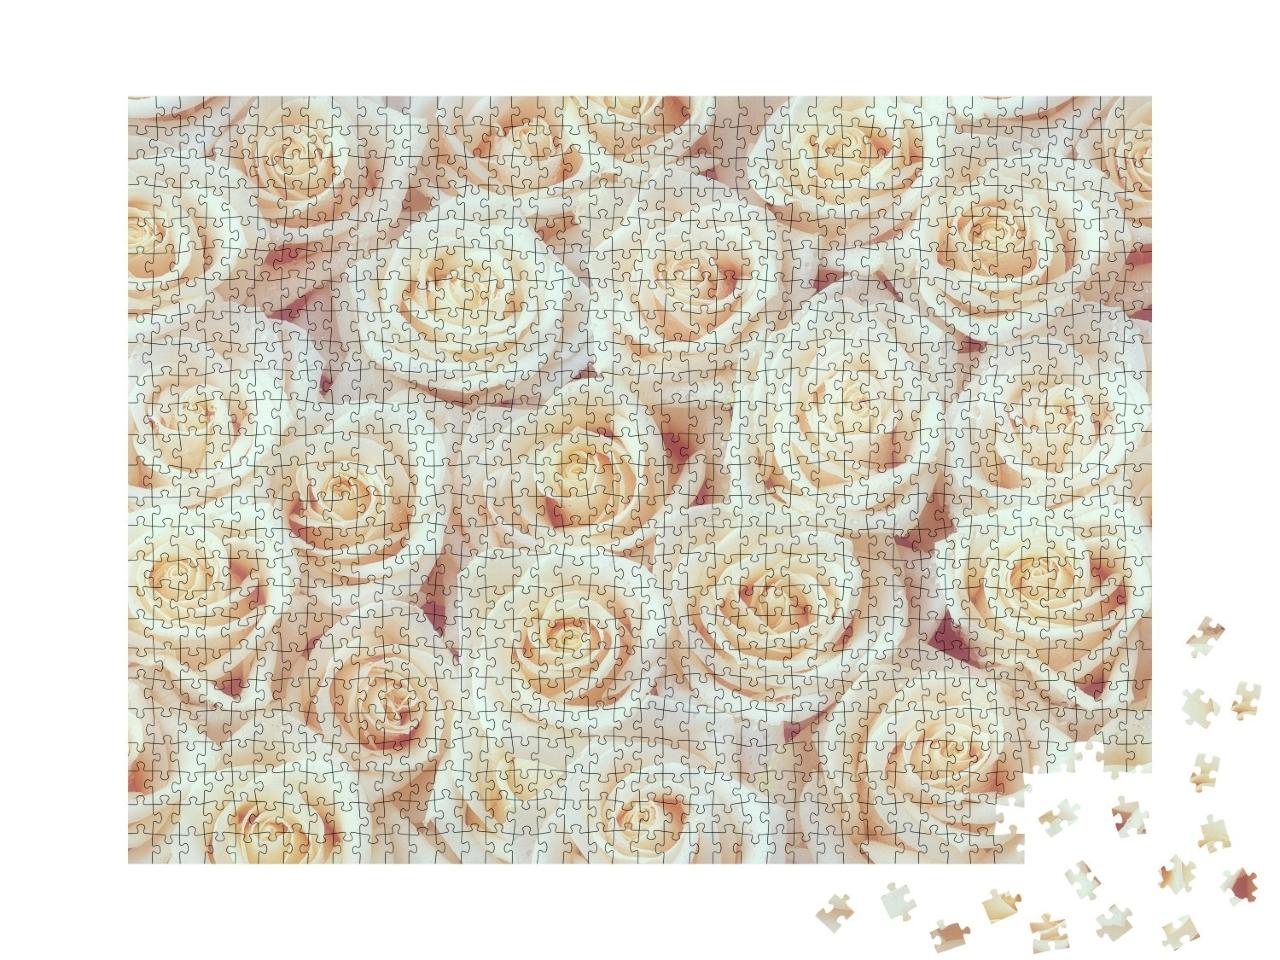 Puzzle de 1000 pièces « Roses blanches »